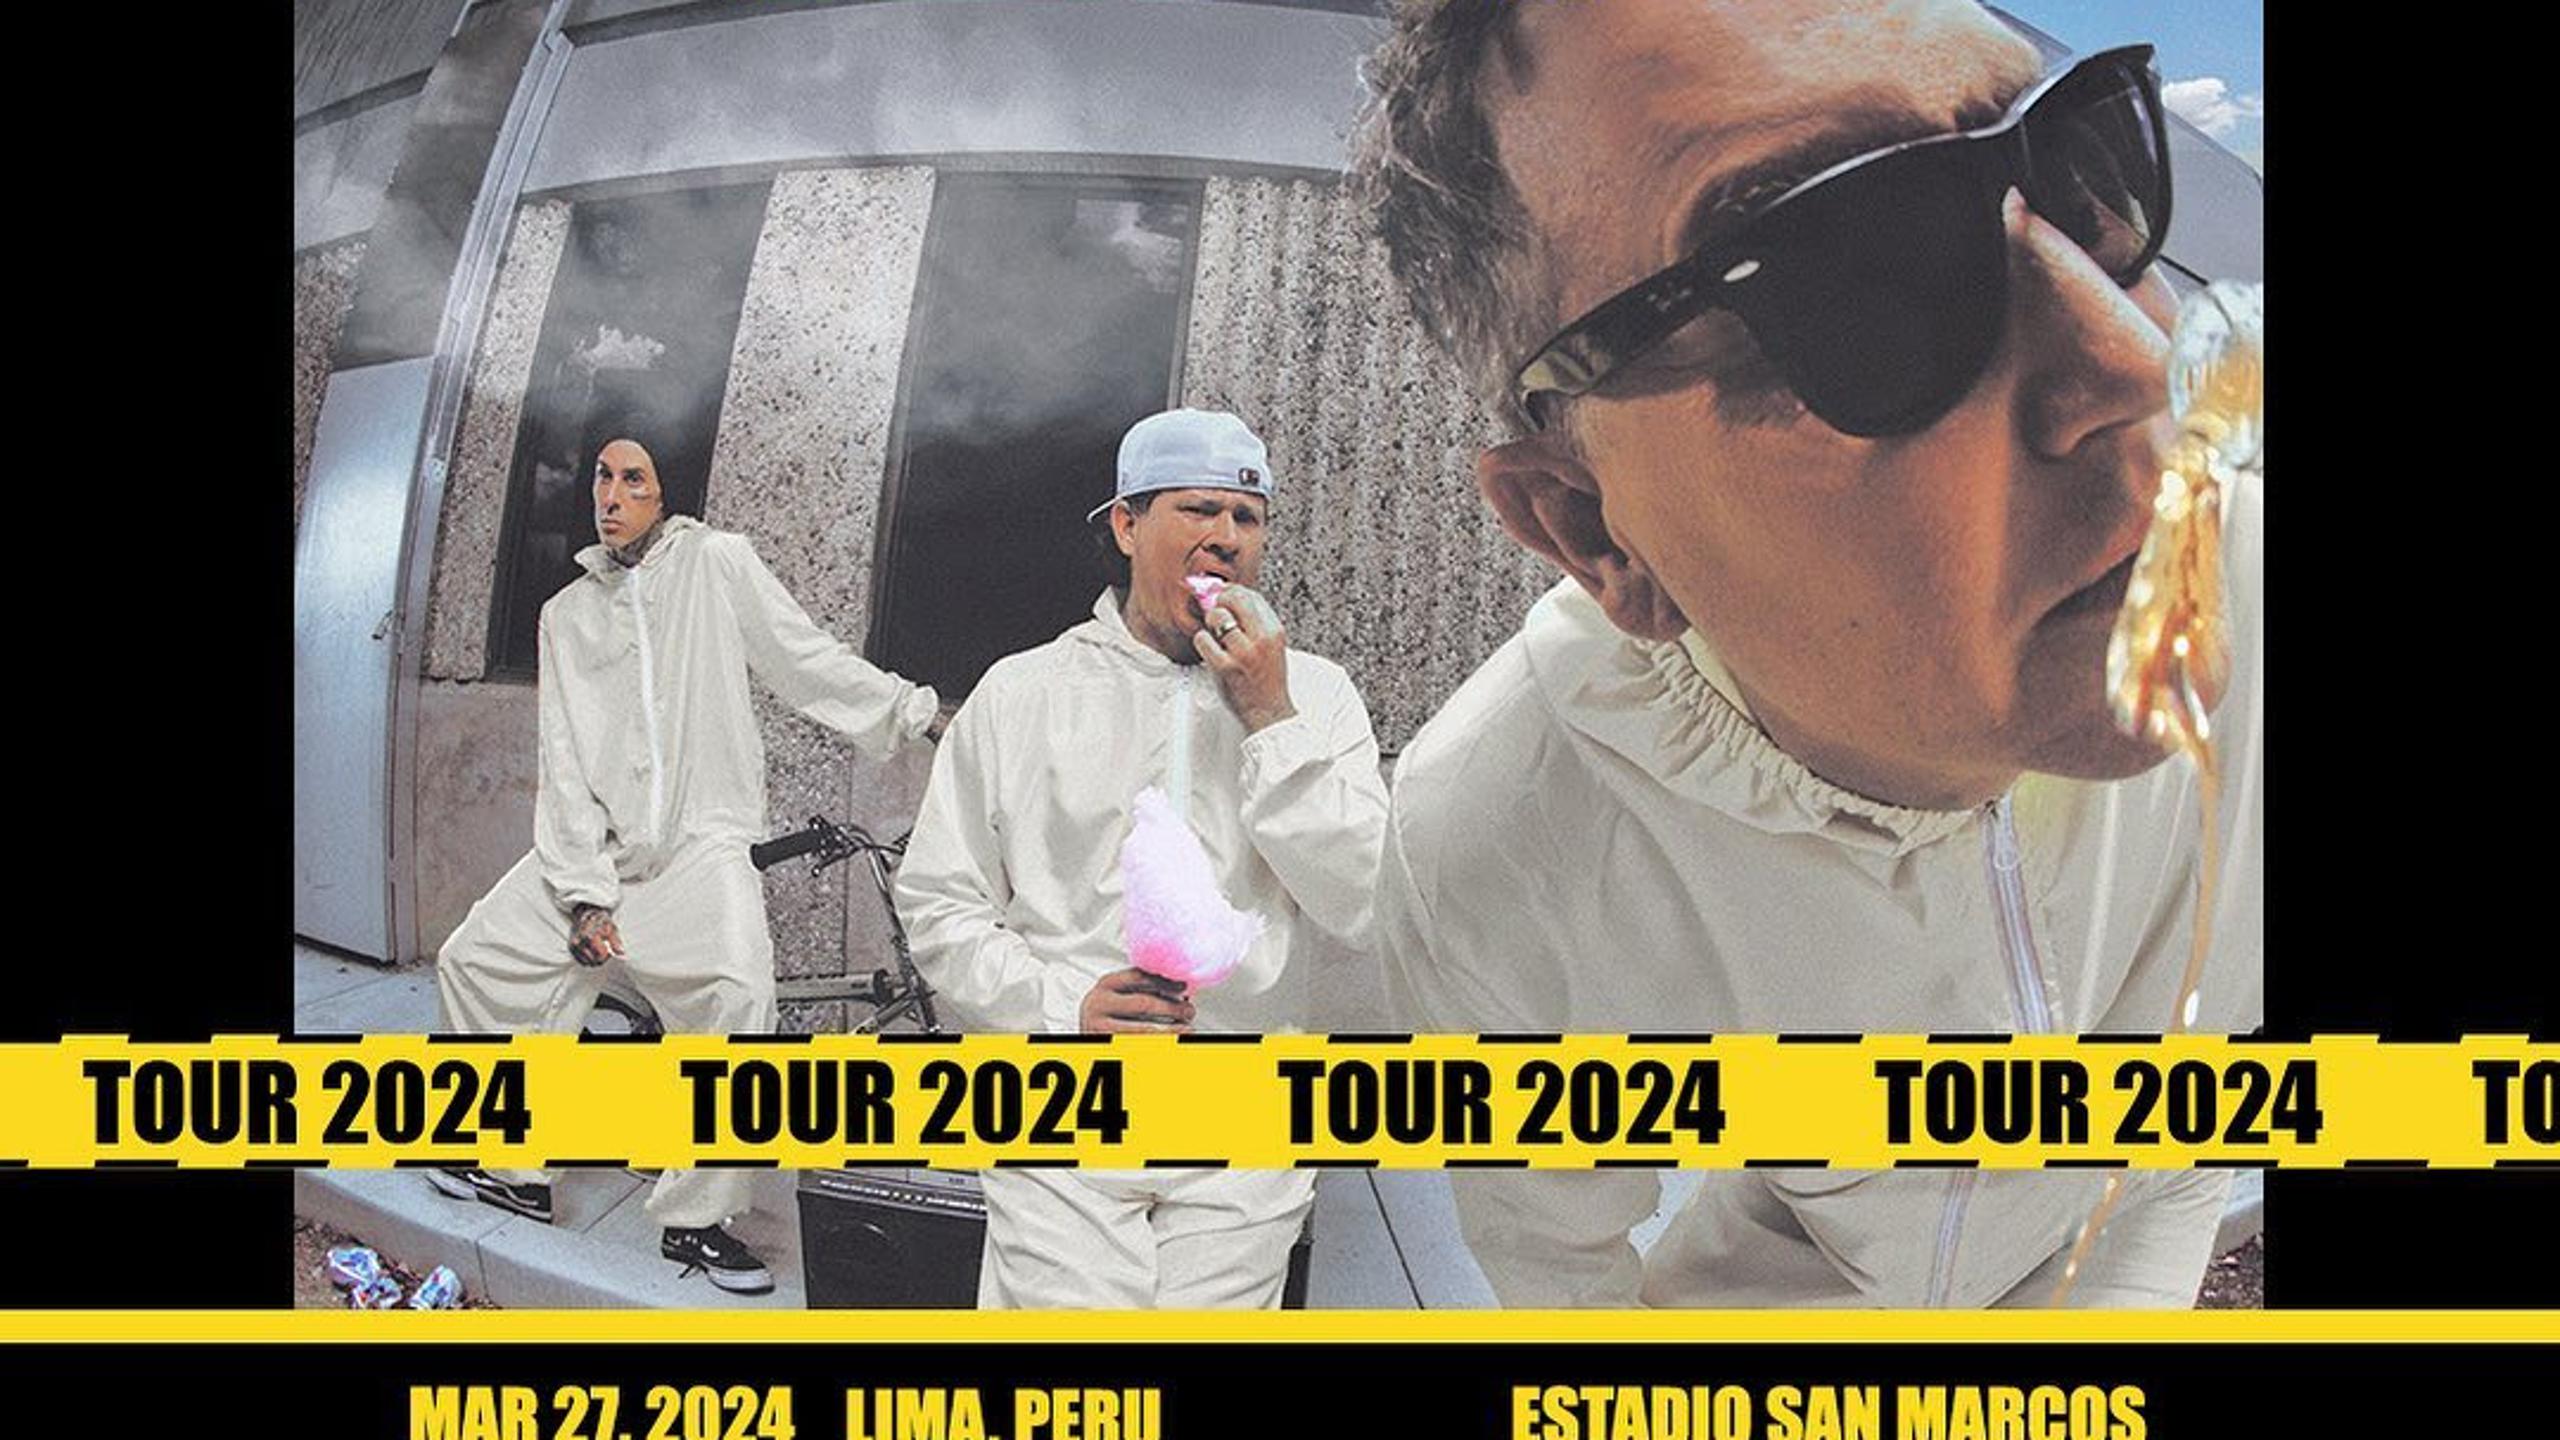 Blink182 concert tickets for Palacio de los Deportes, CDMX Mexico City